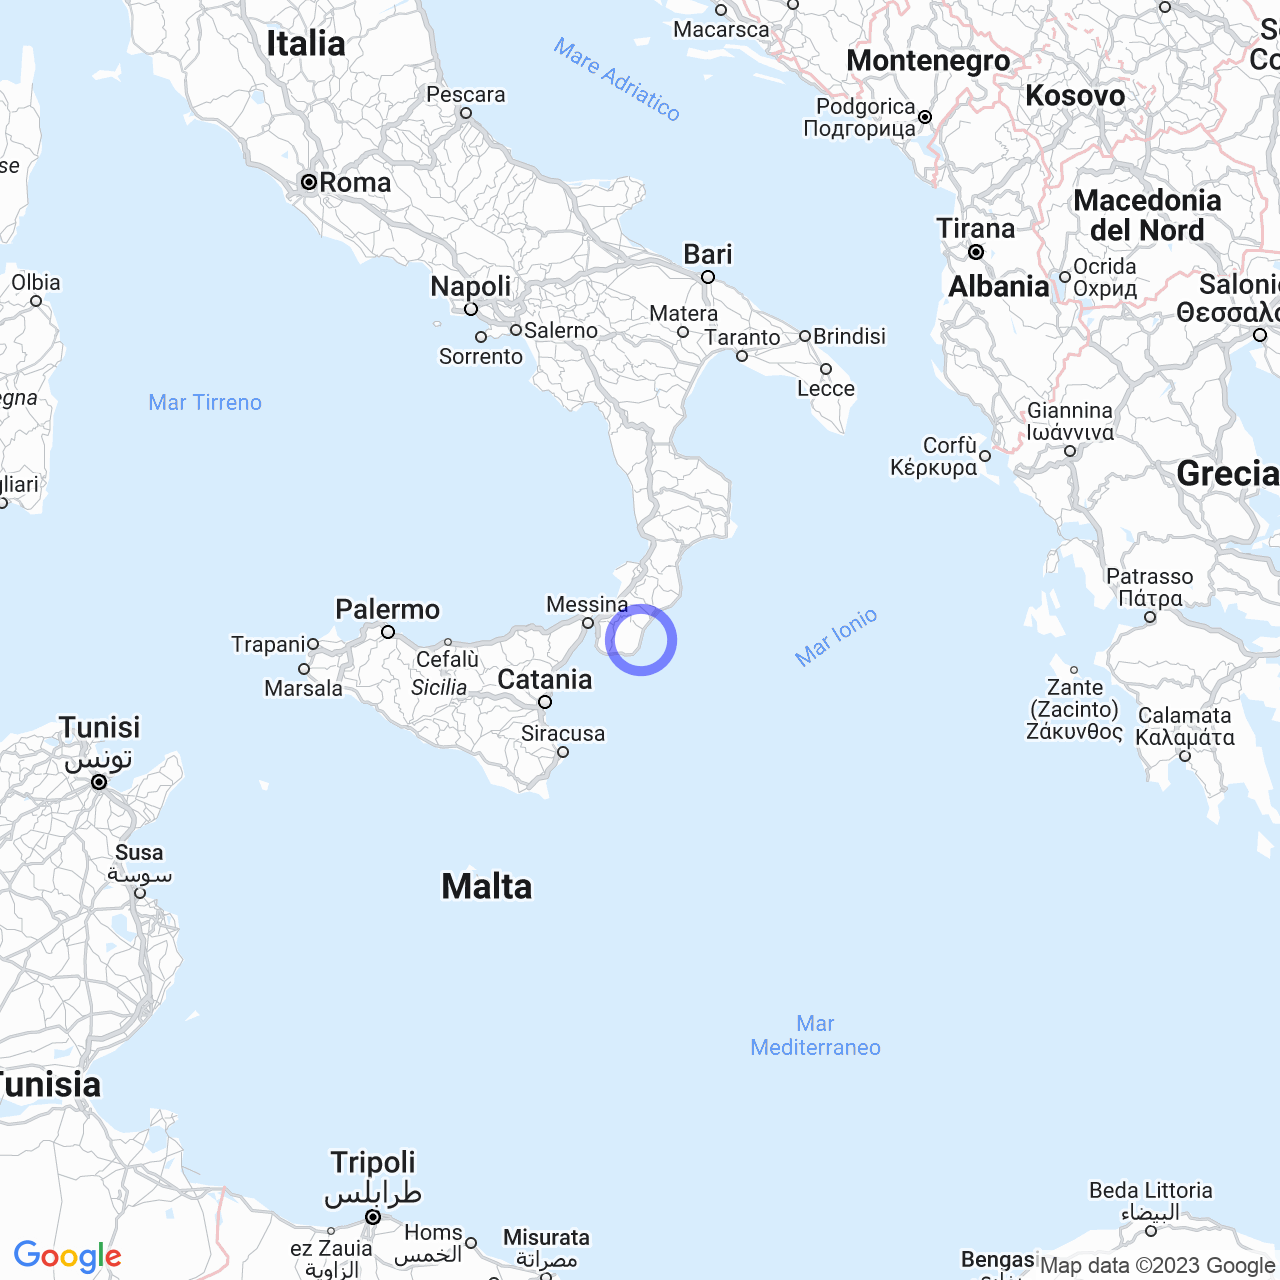 La provincia di Reggio Calabria: territorio e comuni